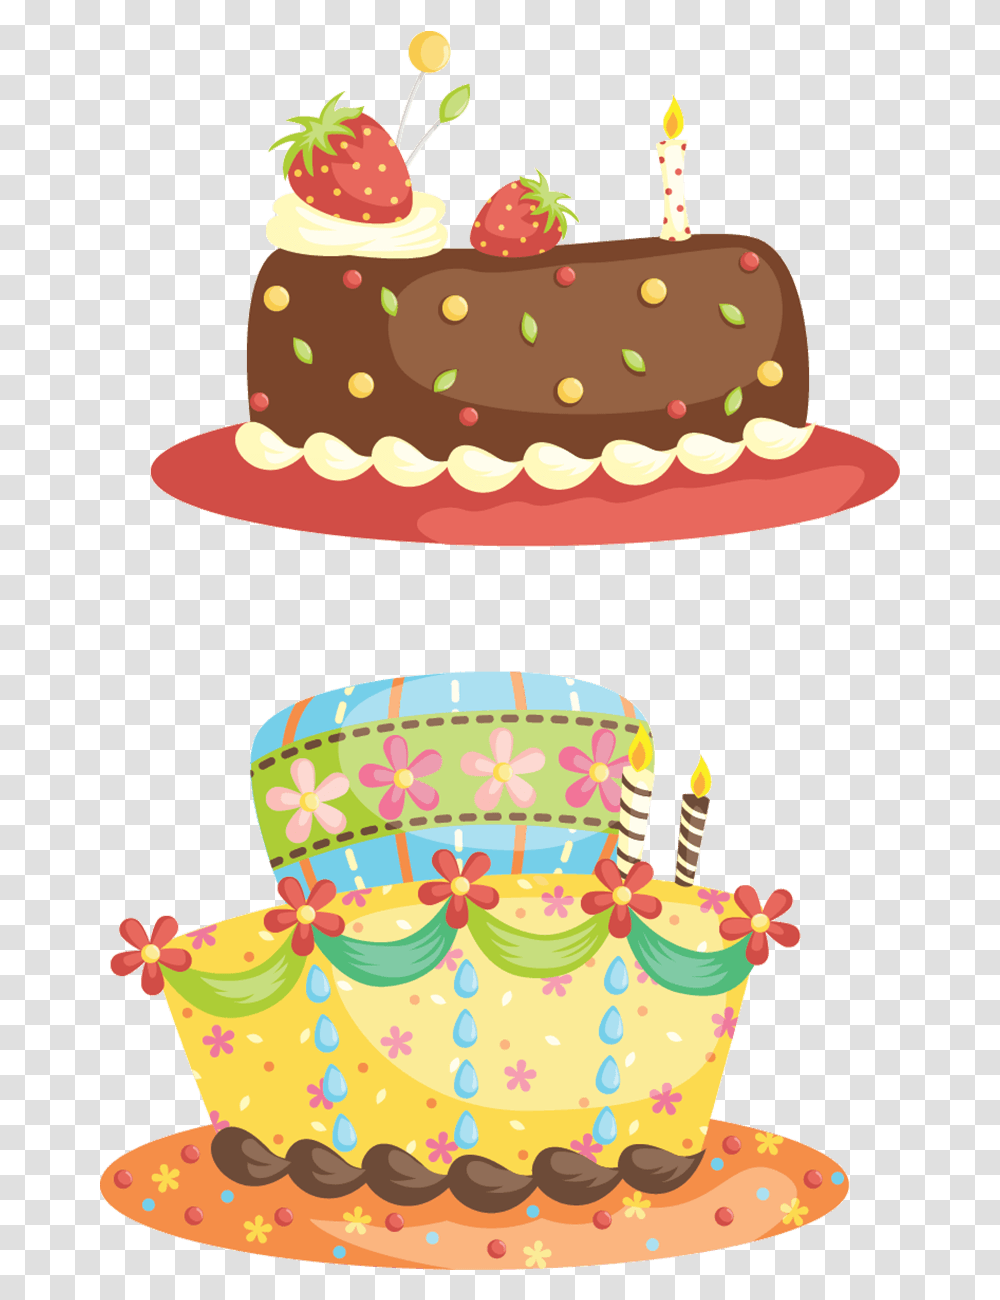 Imagens De Bolos E Doces Em Desenho, Birthday Cake, Dessert, Food, Cream Transparent Png